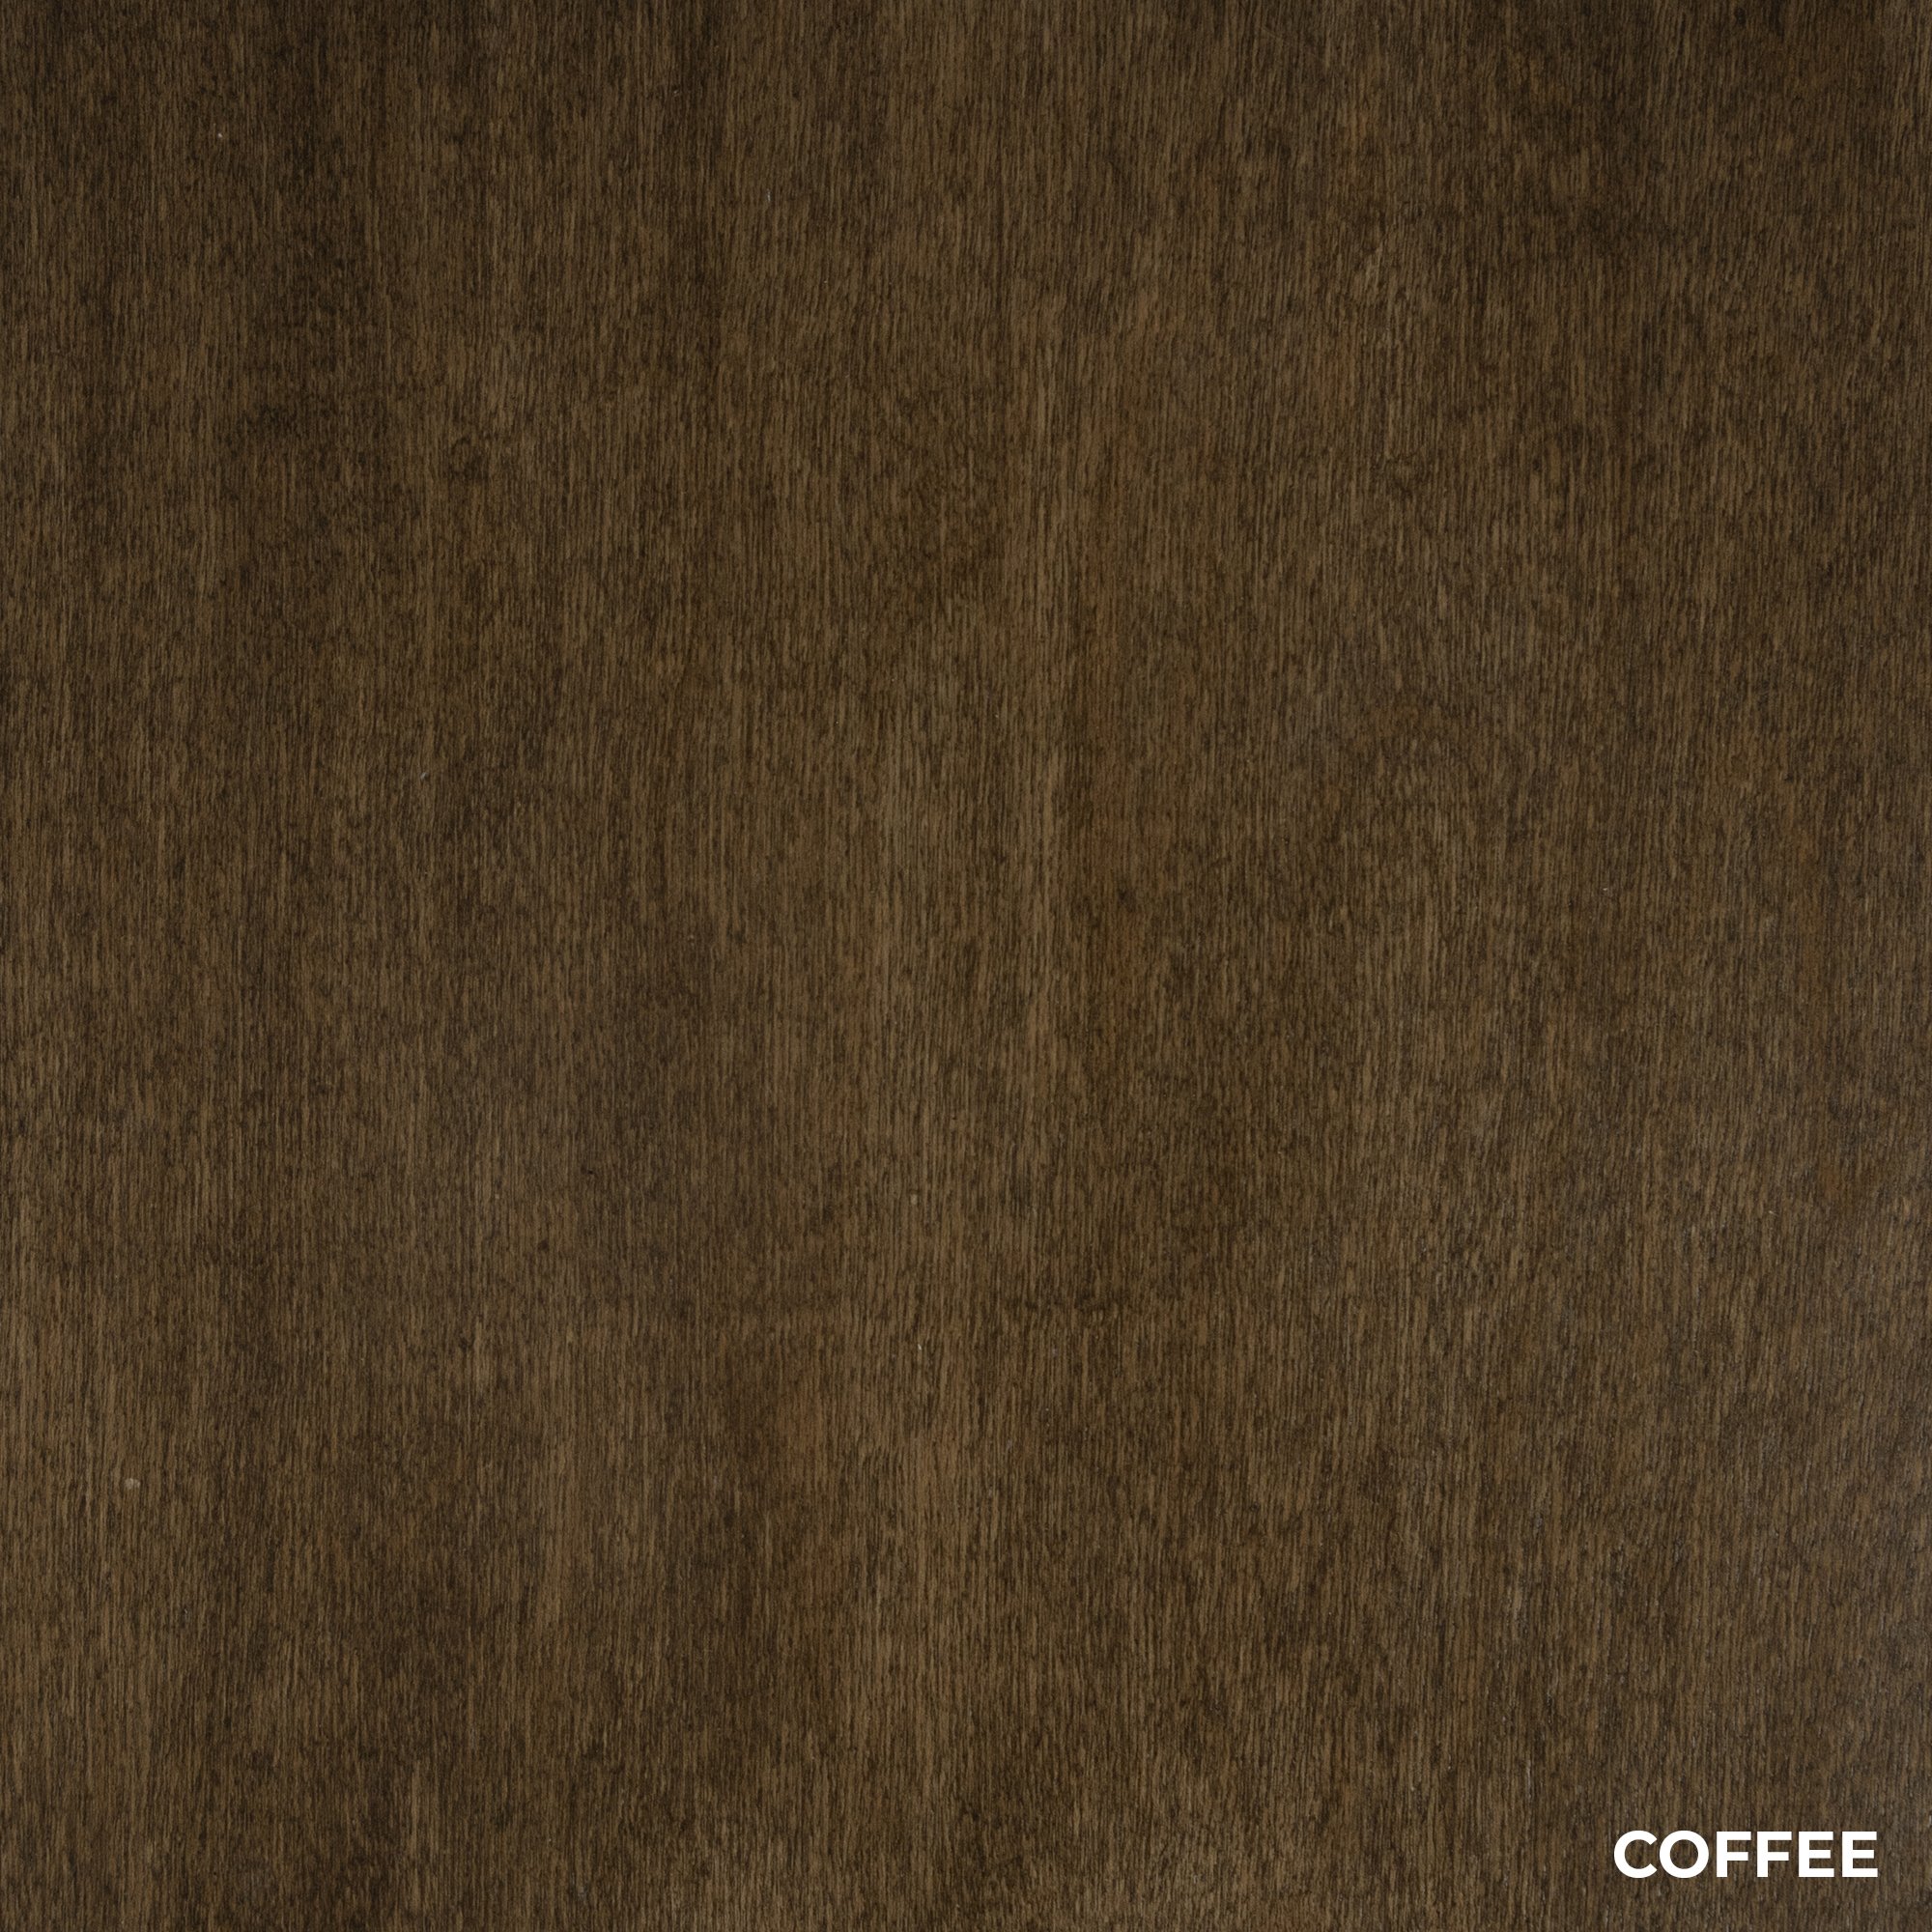 Coffee Wood